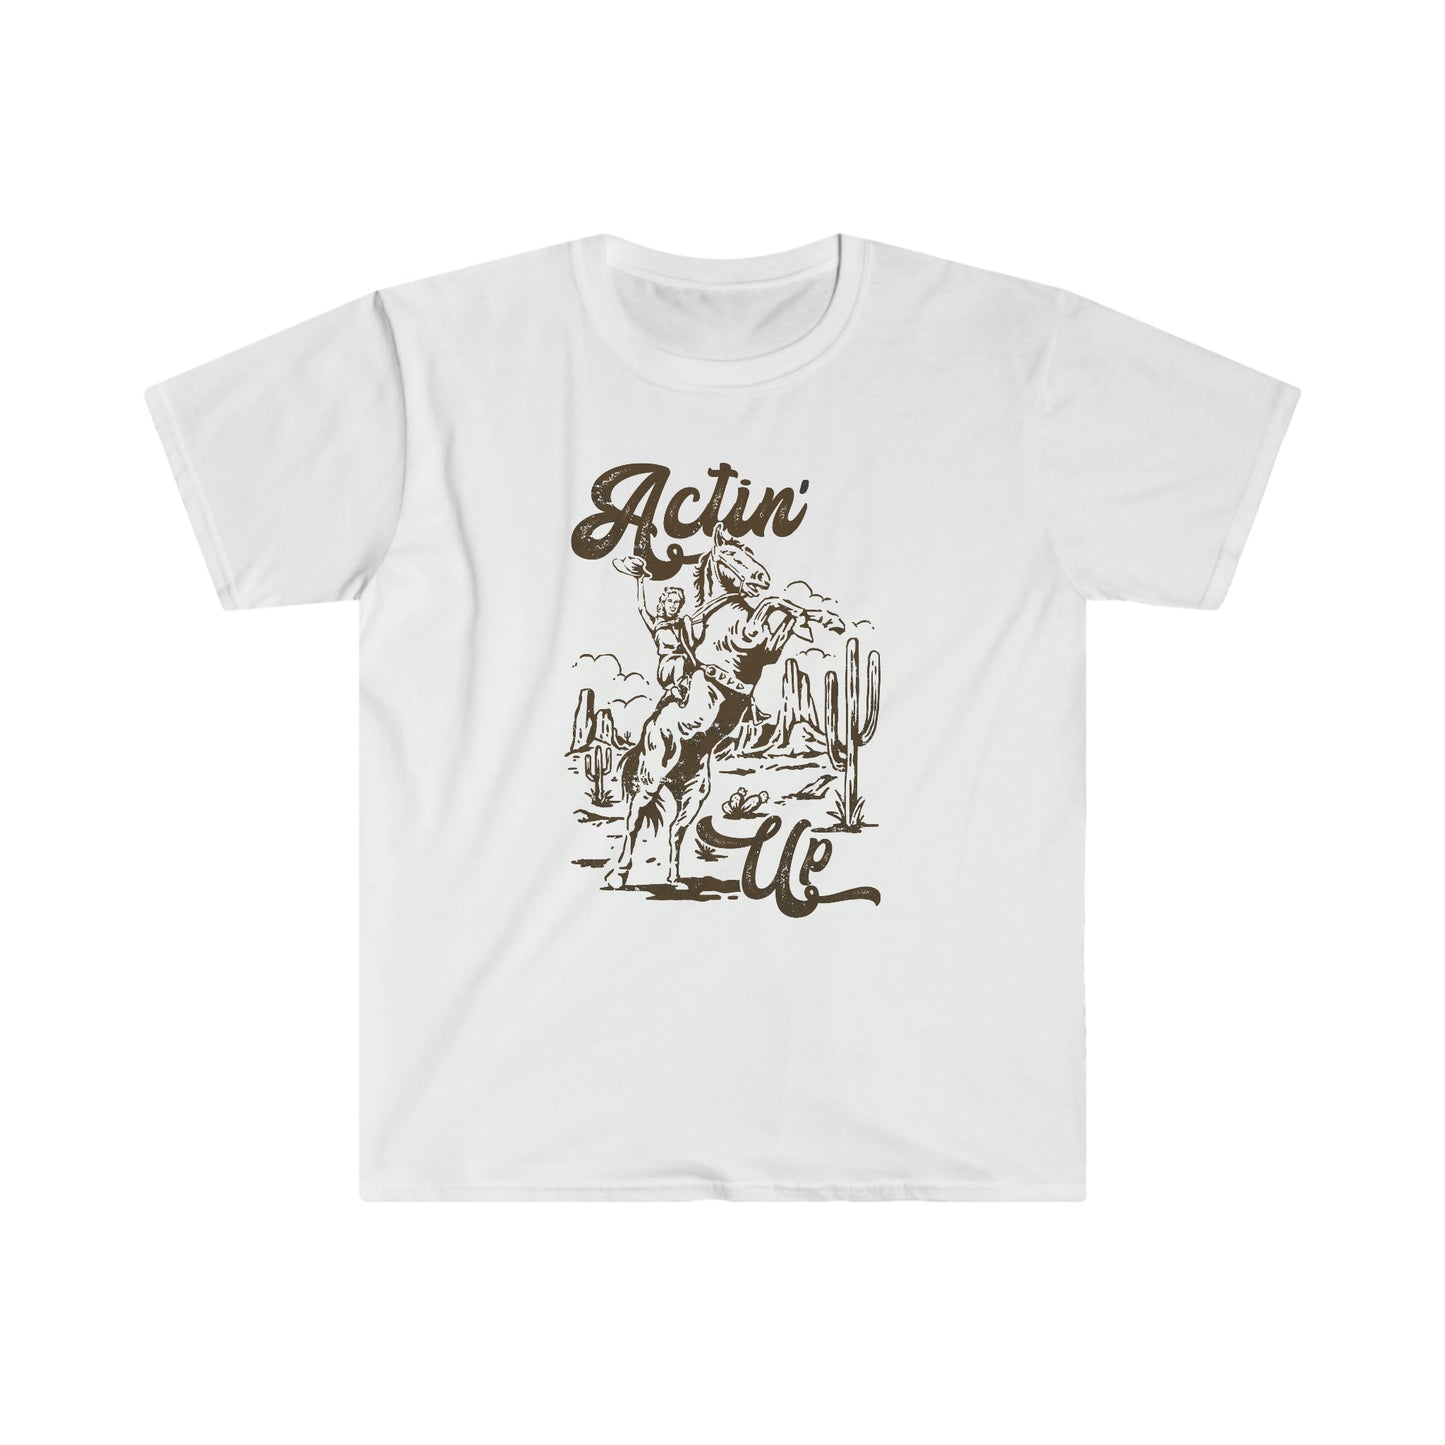 "Actin' Up" Gildan Softstyle T-Shirt